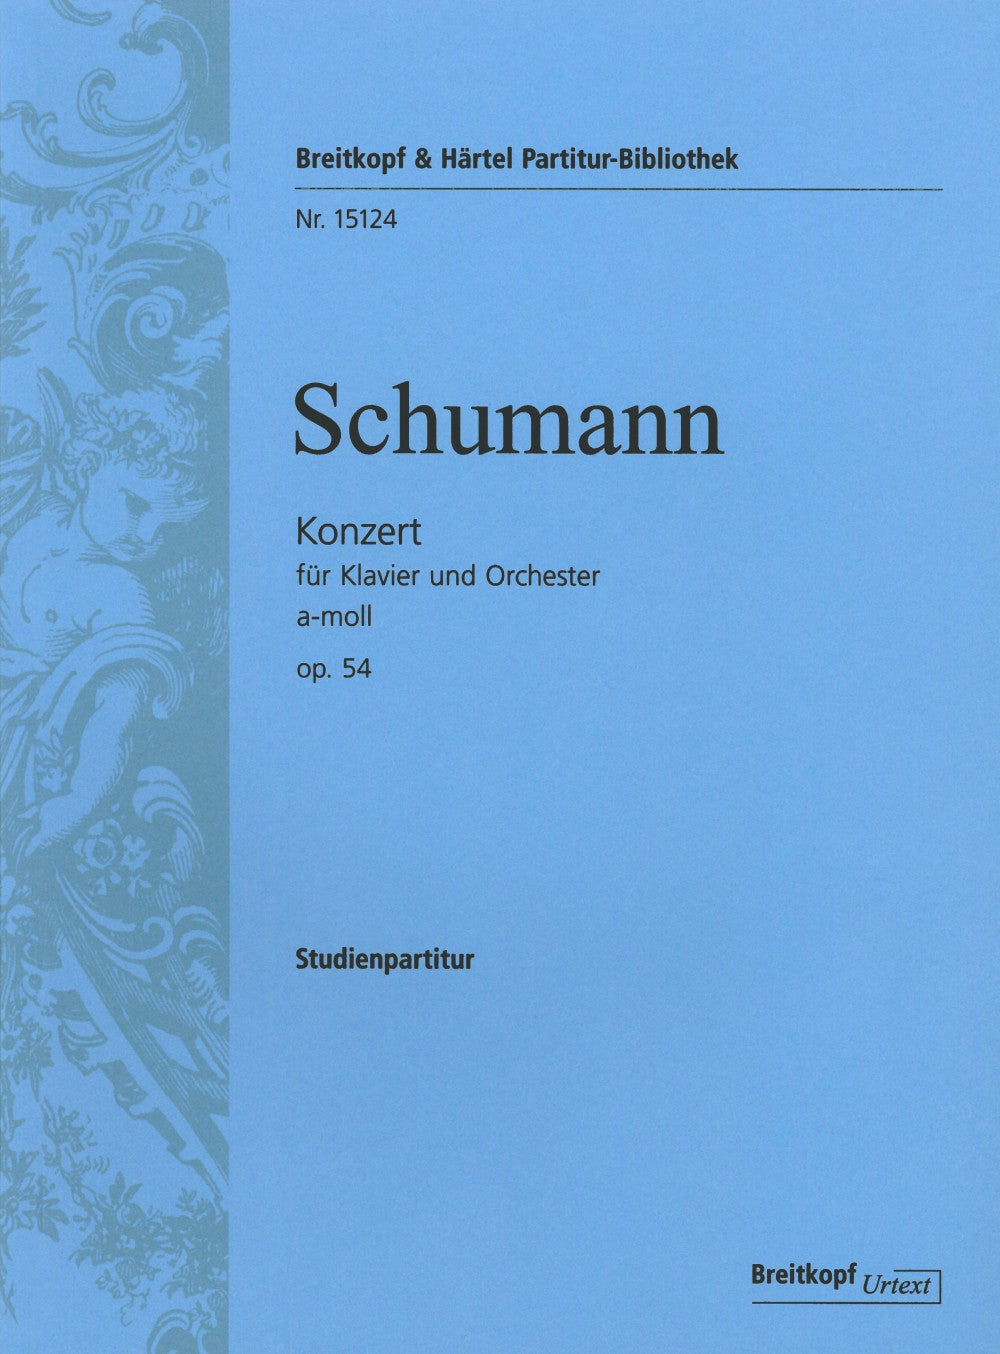 Mozart: Piano Concerto No. 25 in C Major, K. 503